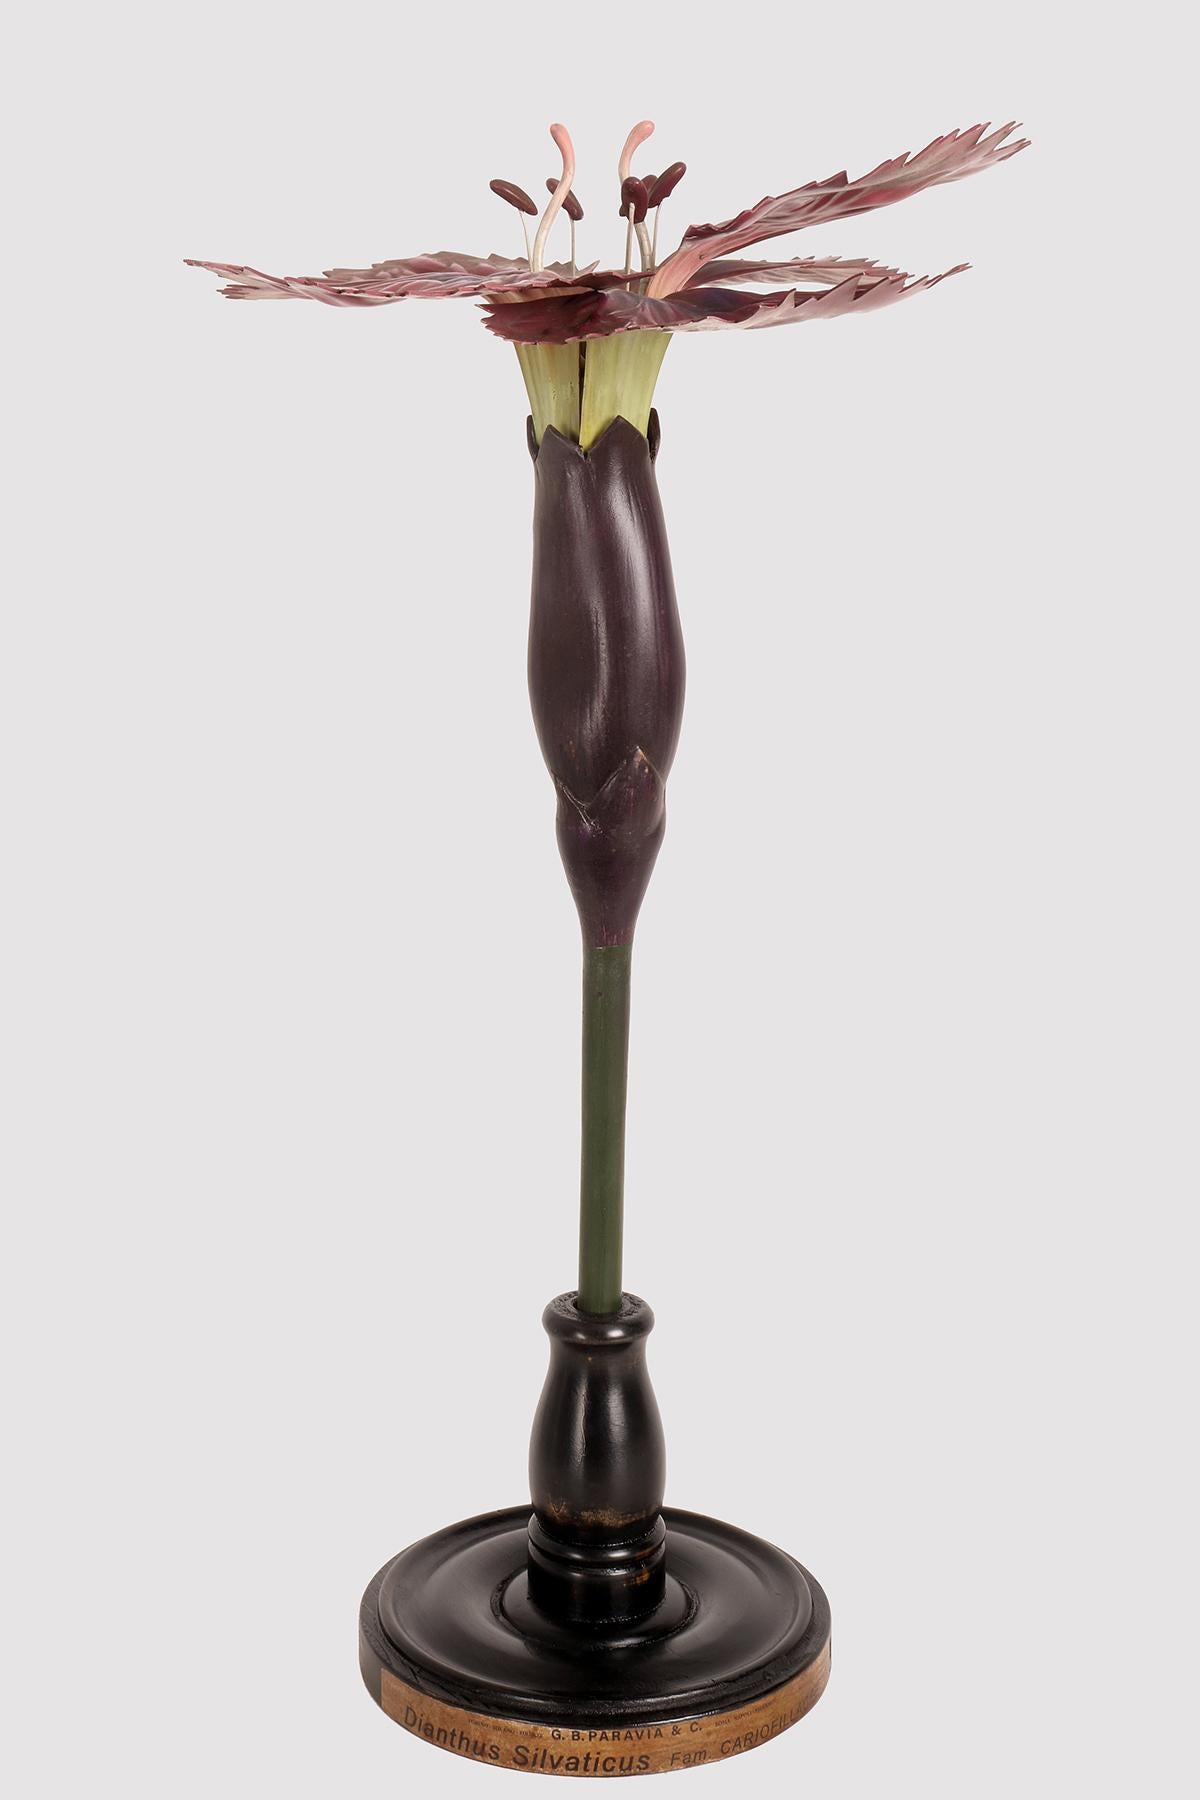 Maquette botanique à usage didactique, représentant une fleur d'œillet, Dianthus Silvaticus, Cariofillacee. Réalisé en métal, papier, plâtre, galalithe et bois. Extrêmement détaillé. Paravia, Milan, Italie vers 1940.